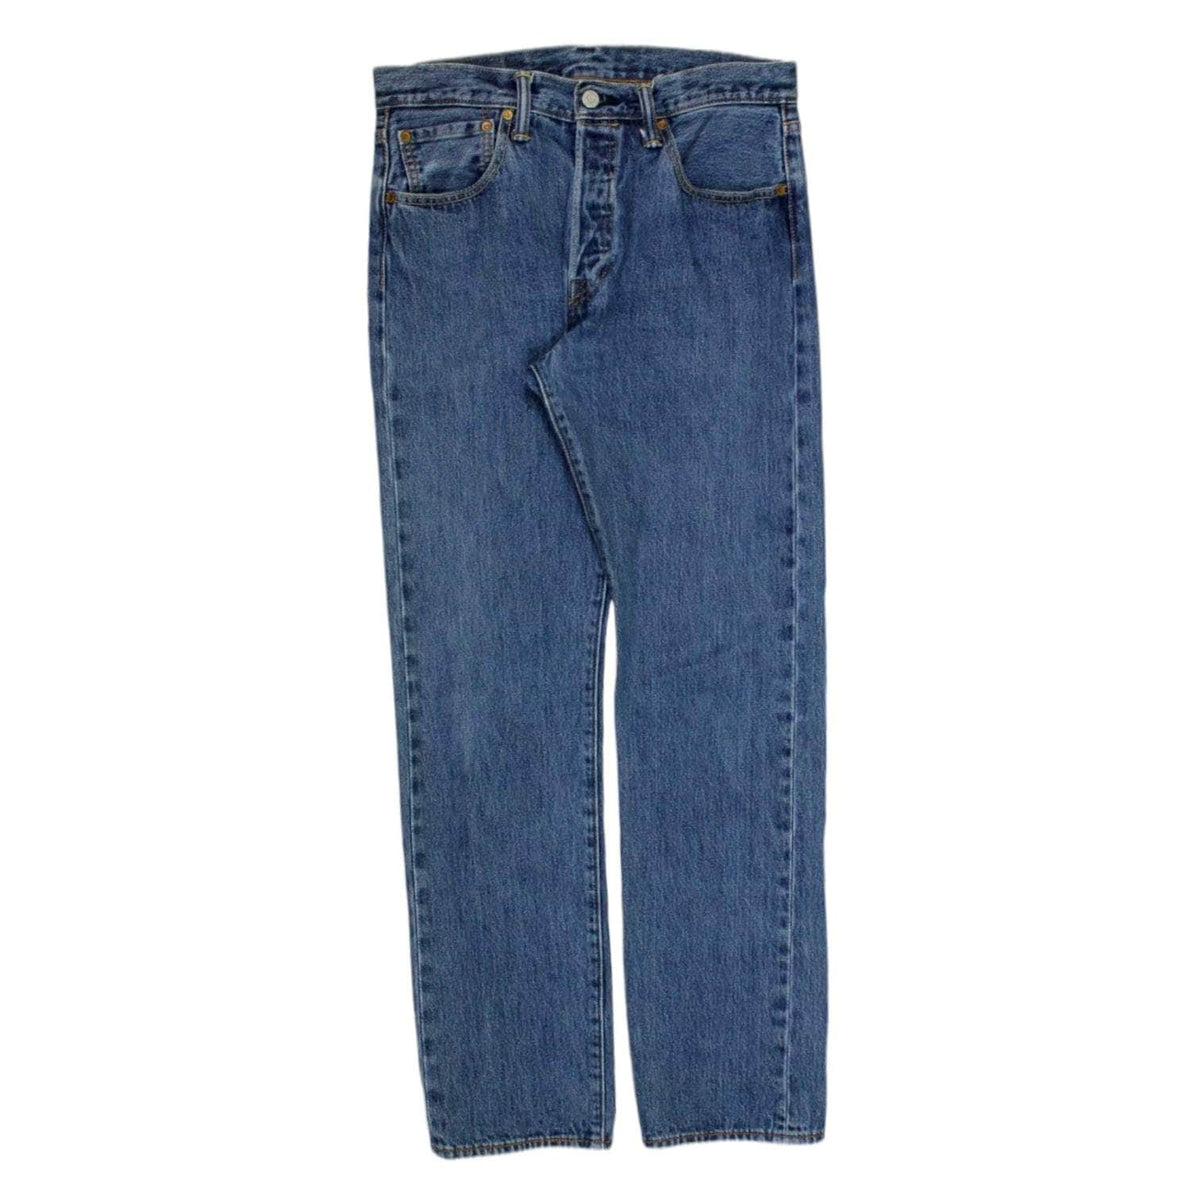 Levi 501 Blue Denim Classic Jean